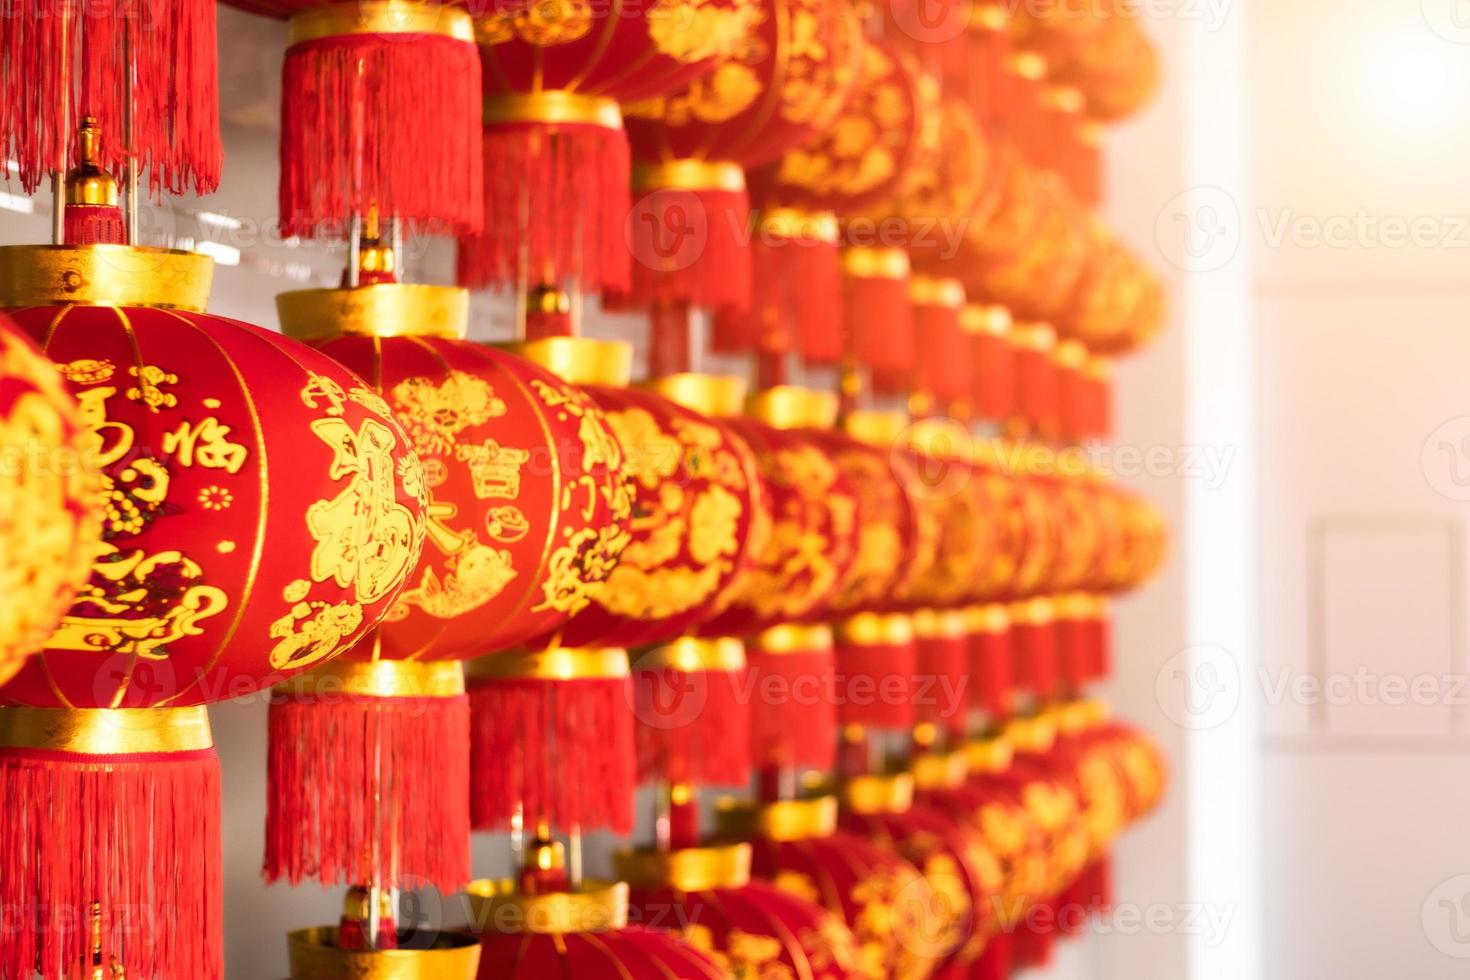 traditionelle chinesische neujahrslaternen reihen sich wunderschön aneinander. foto